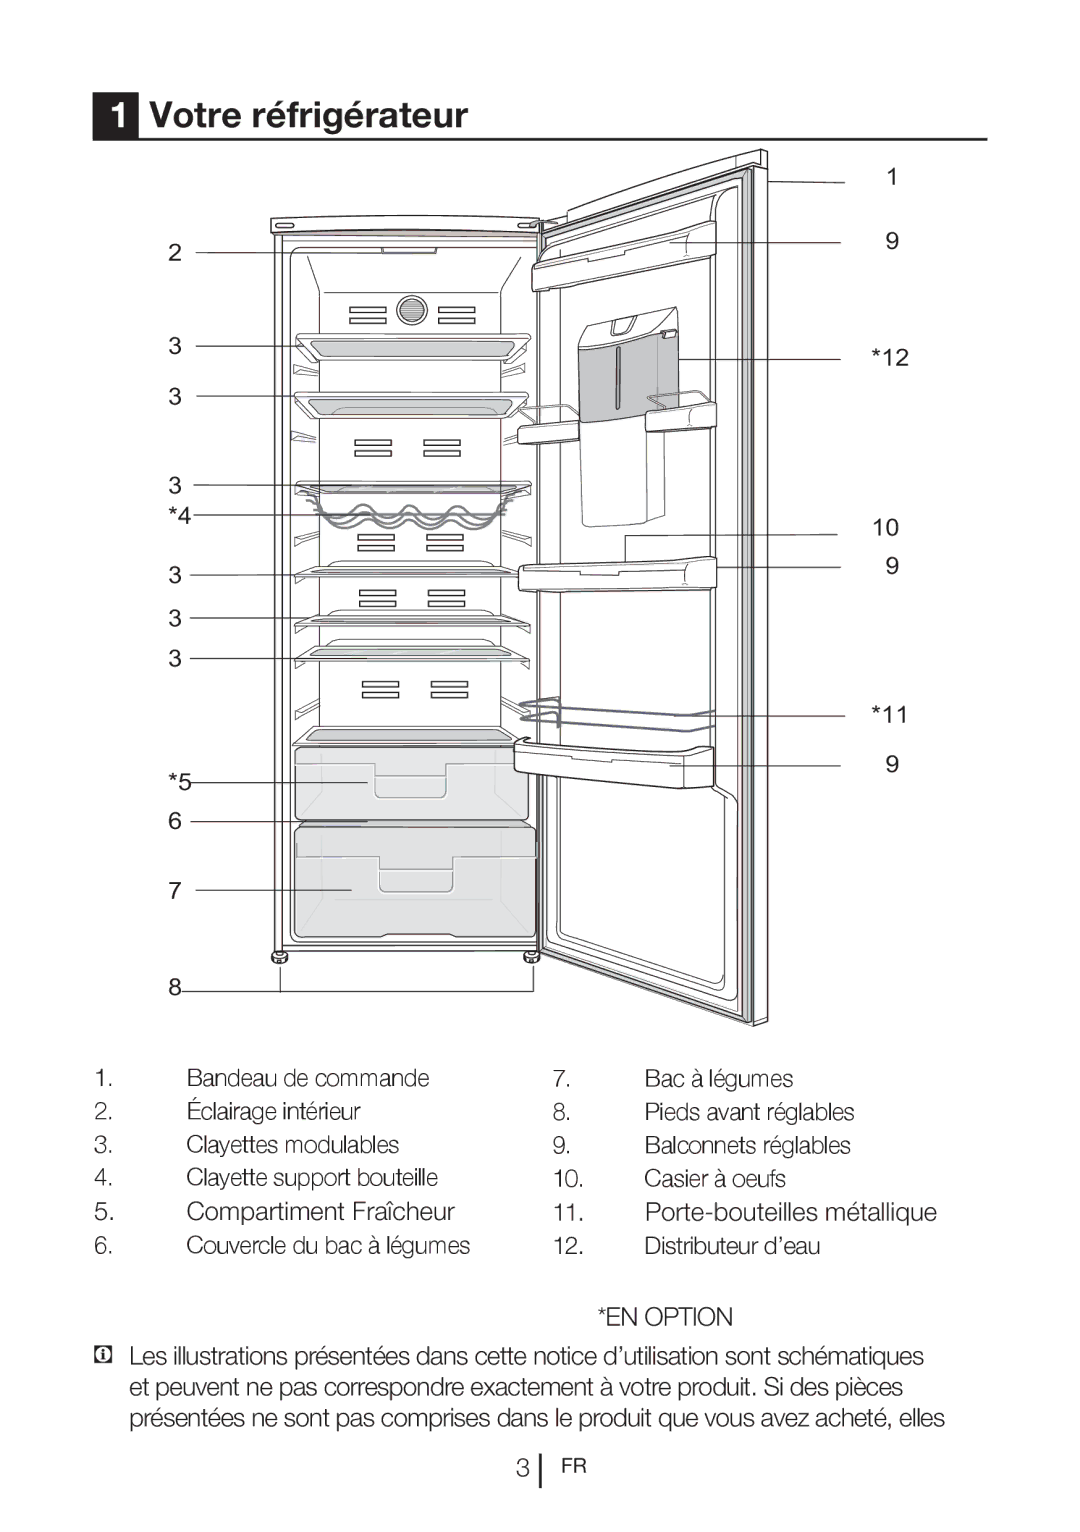 Blomberg SND 9682 XD, SND 9682 ED A+ manual Votre réfrigérateur, Couvercle du bac à légumes Distributeur d’eau 